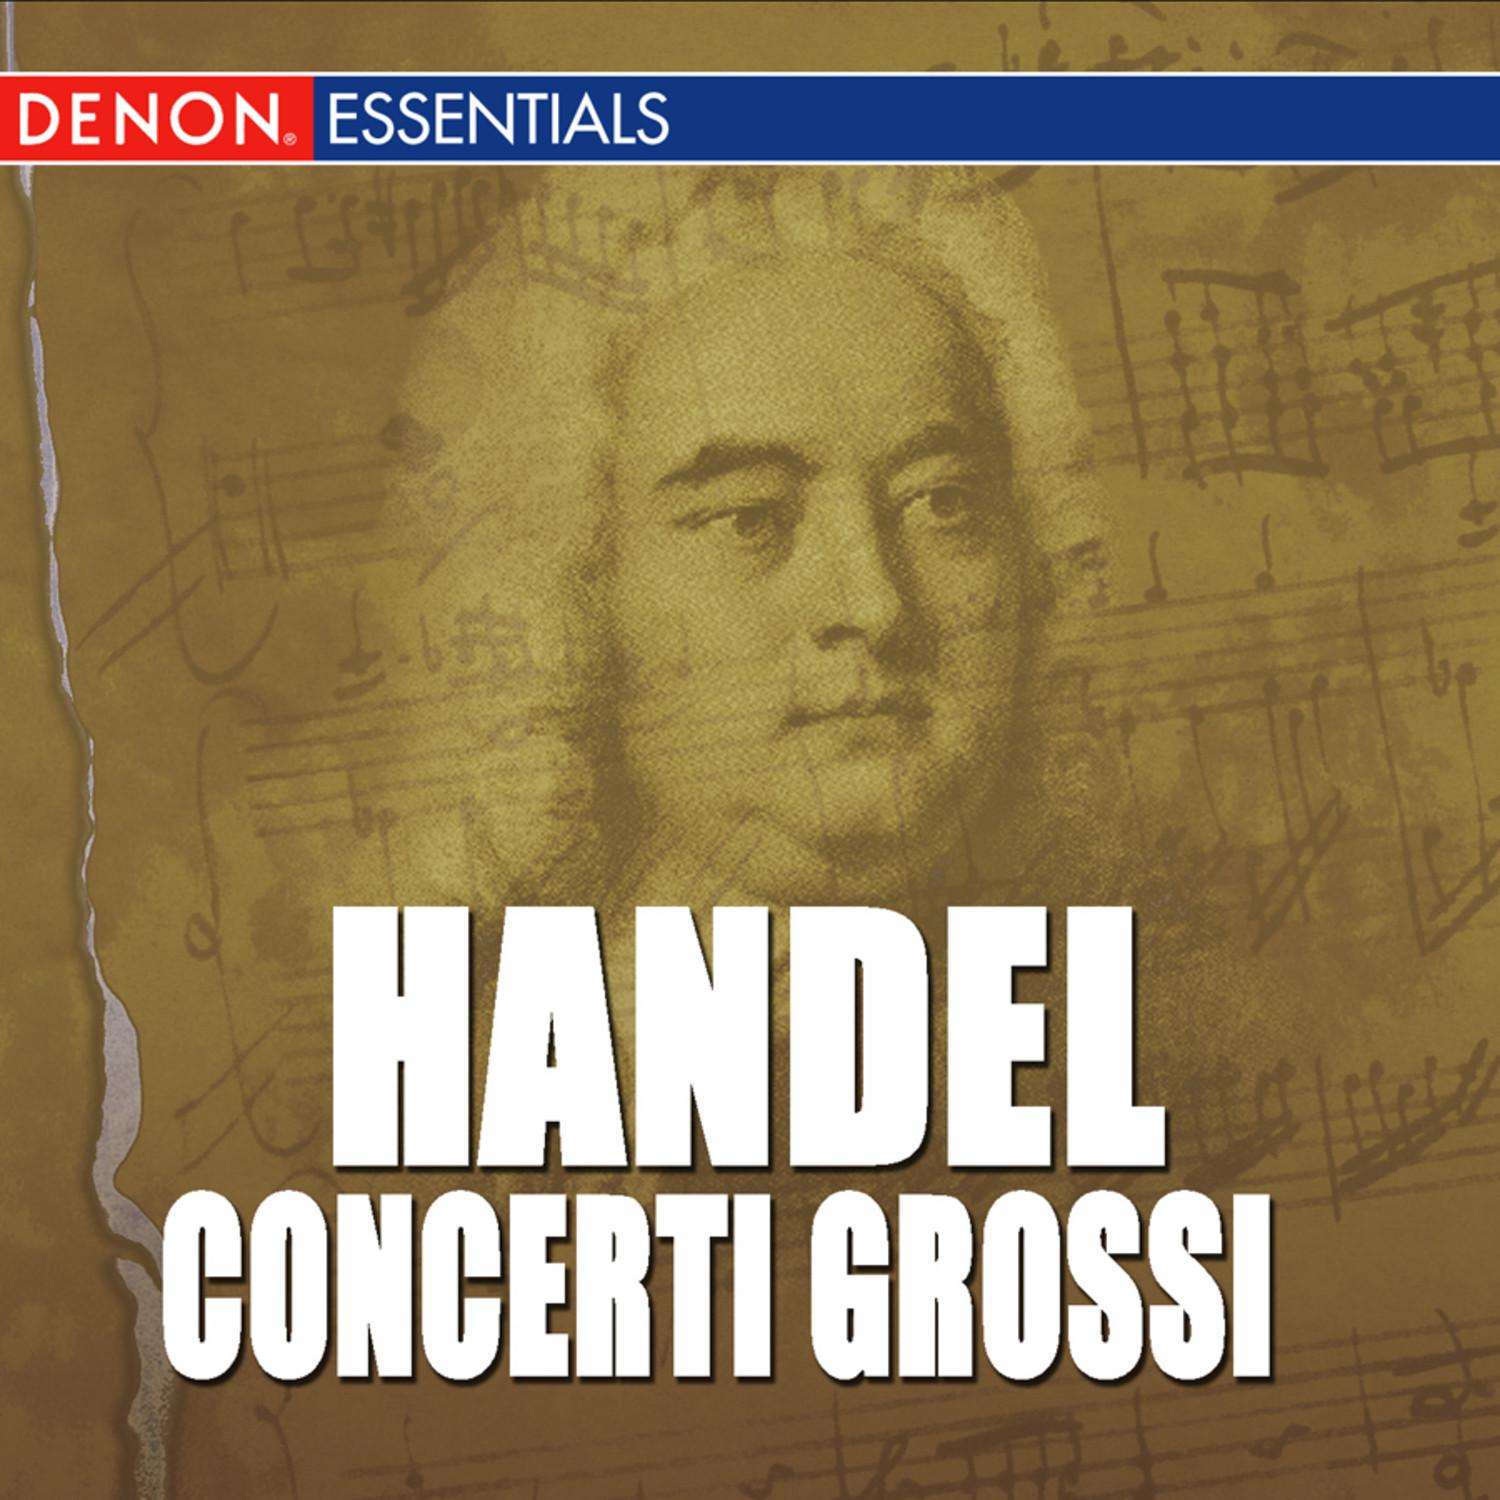 Concerto Grosso, Op. 6: No. 11 in A Major, HWV 329: I. Andante larghetto, e staccato